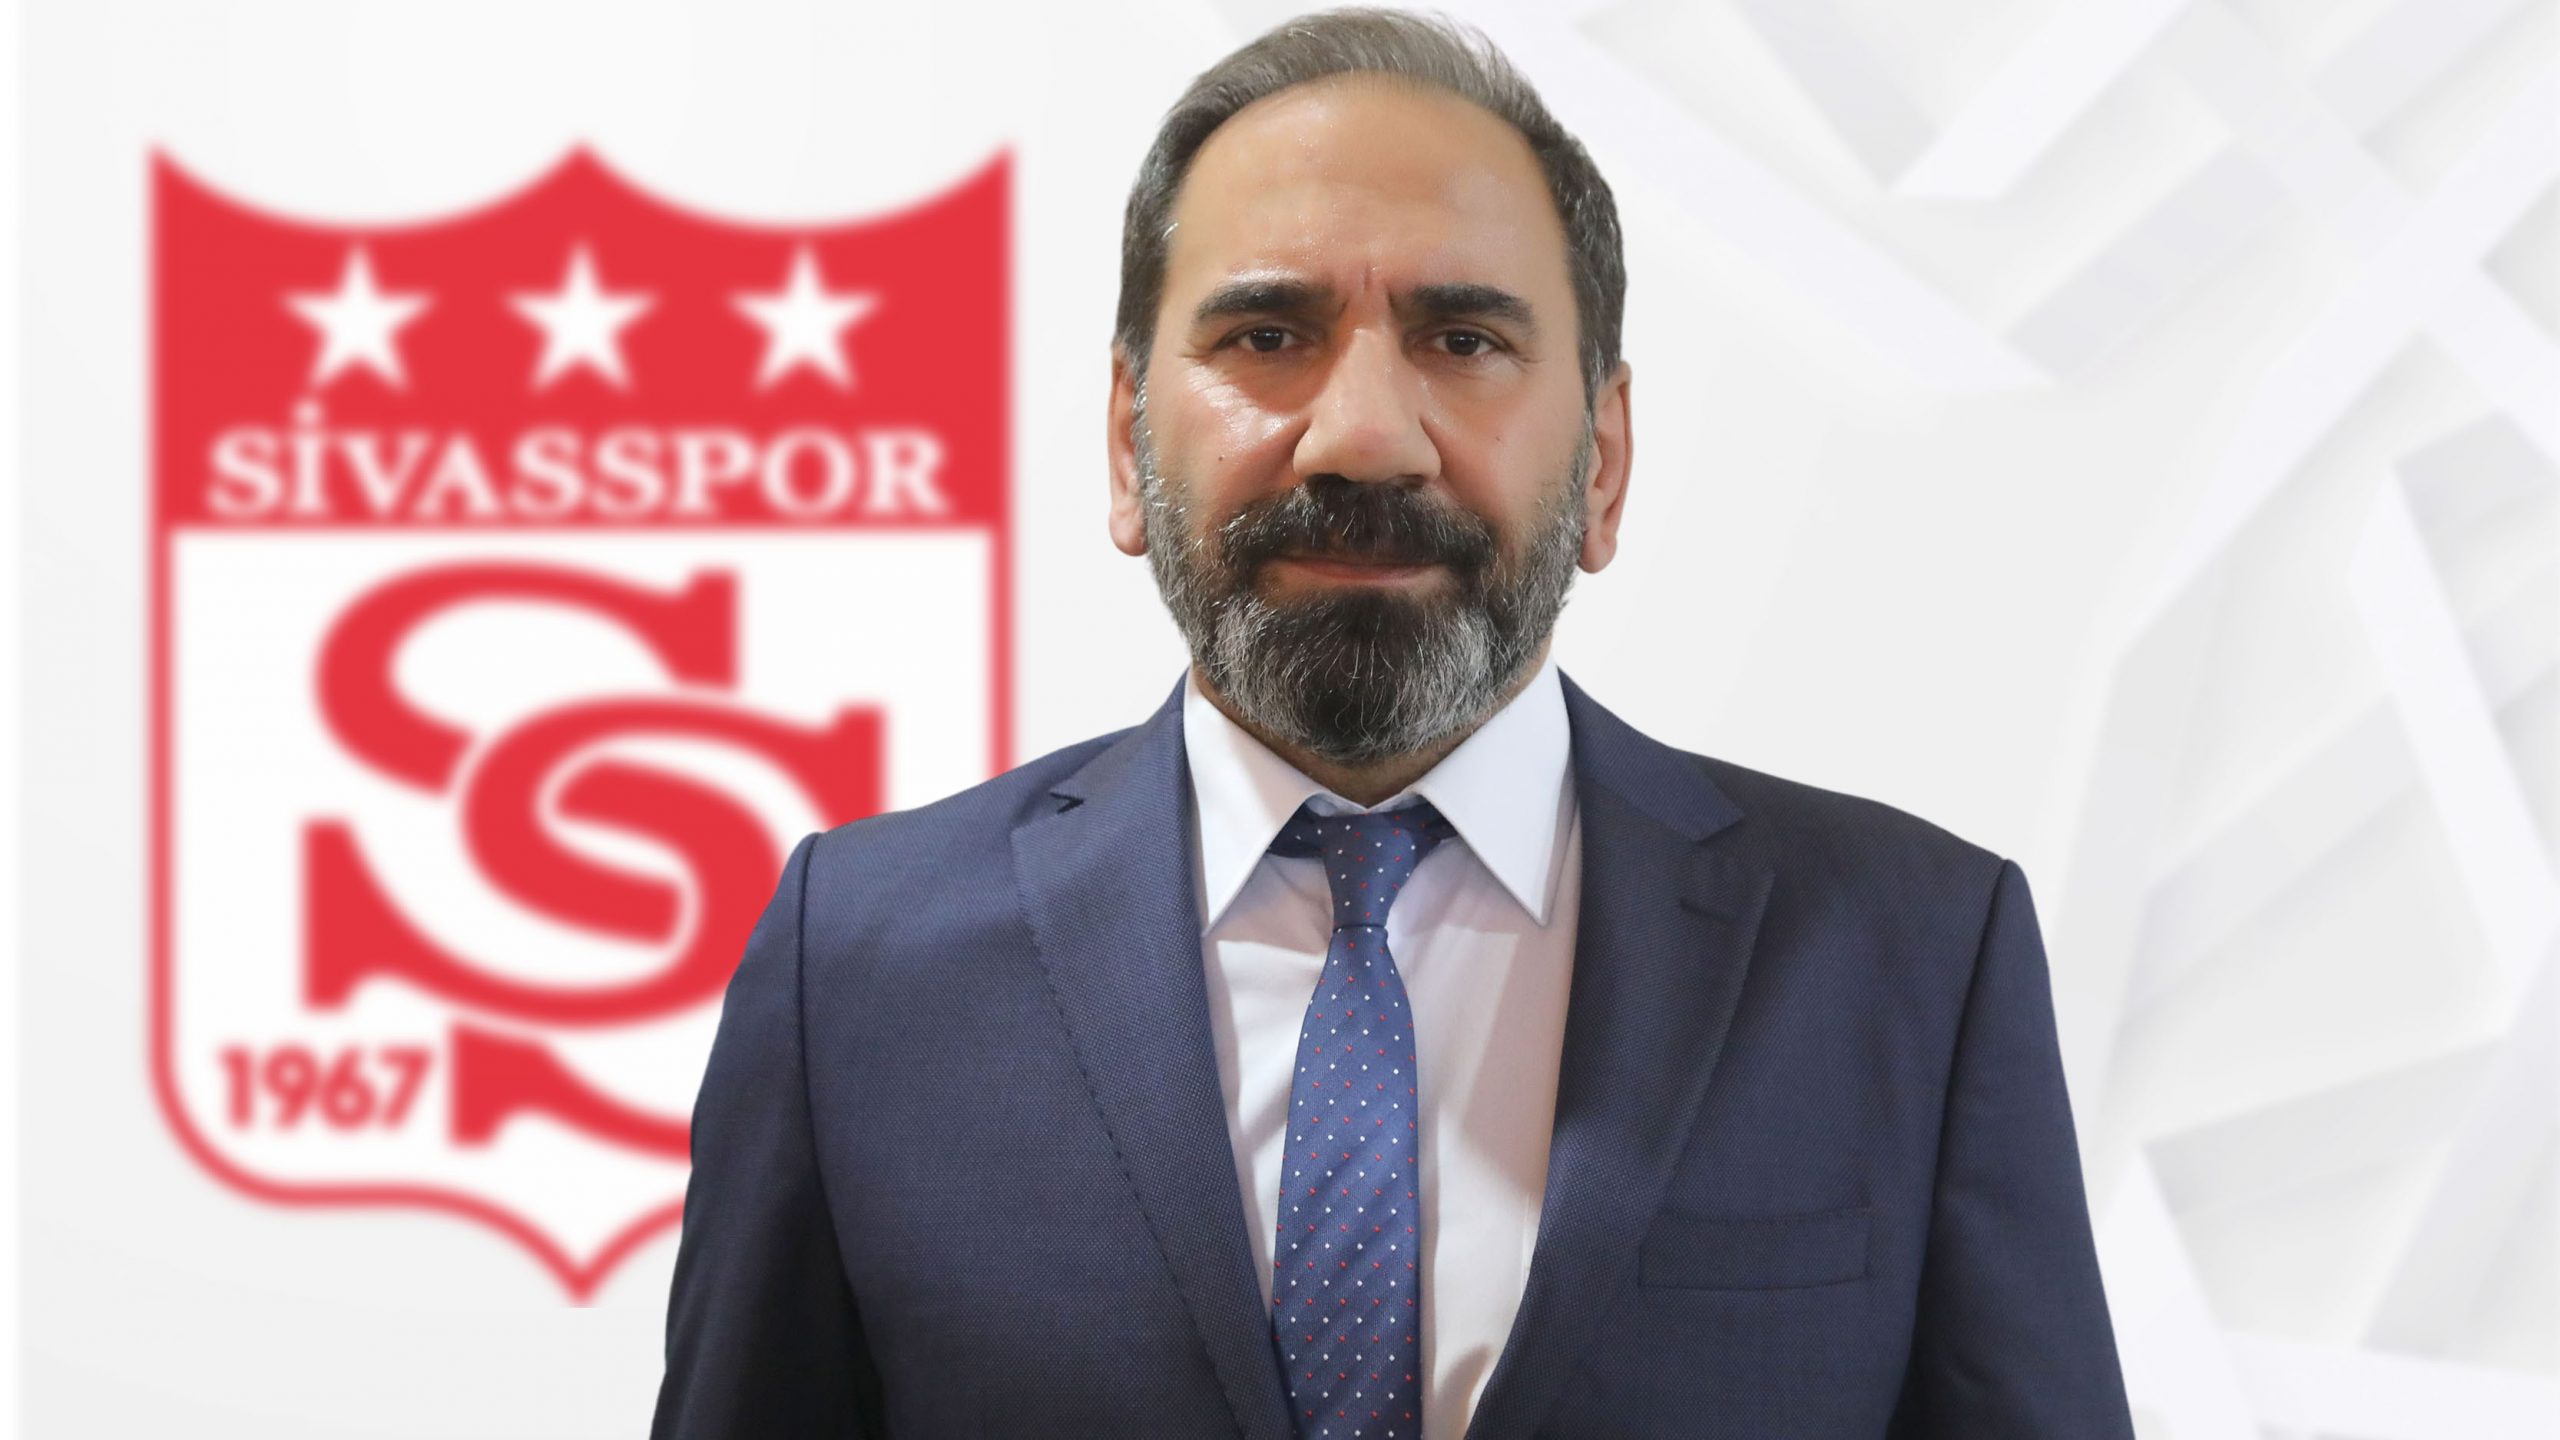 Demir Grup Sivasspor 56 Yaşında